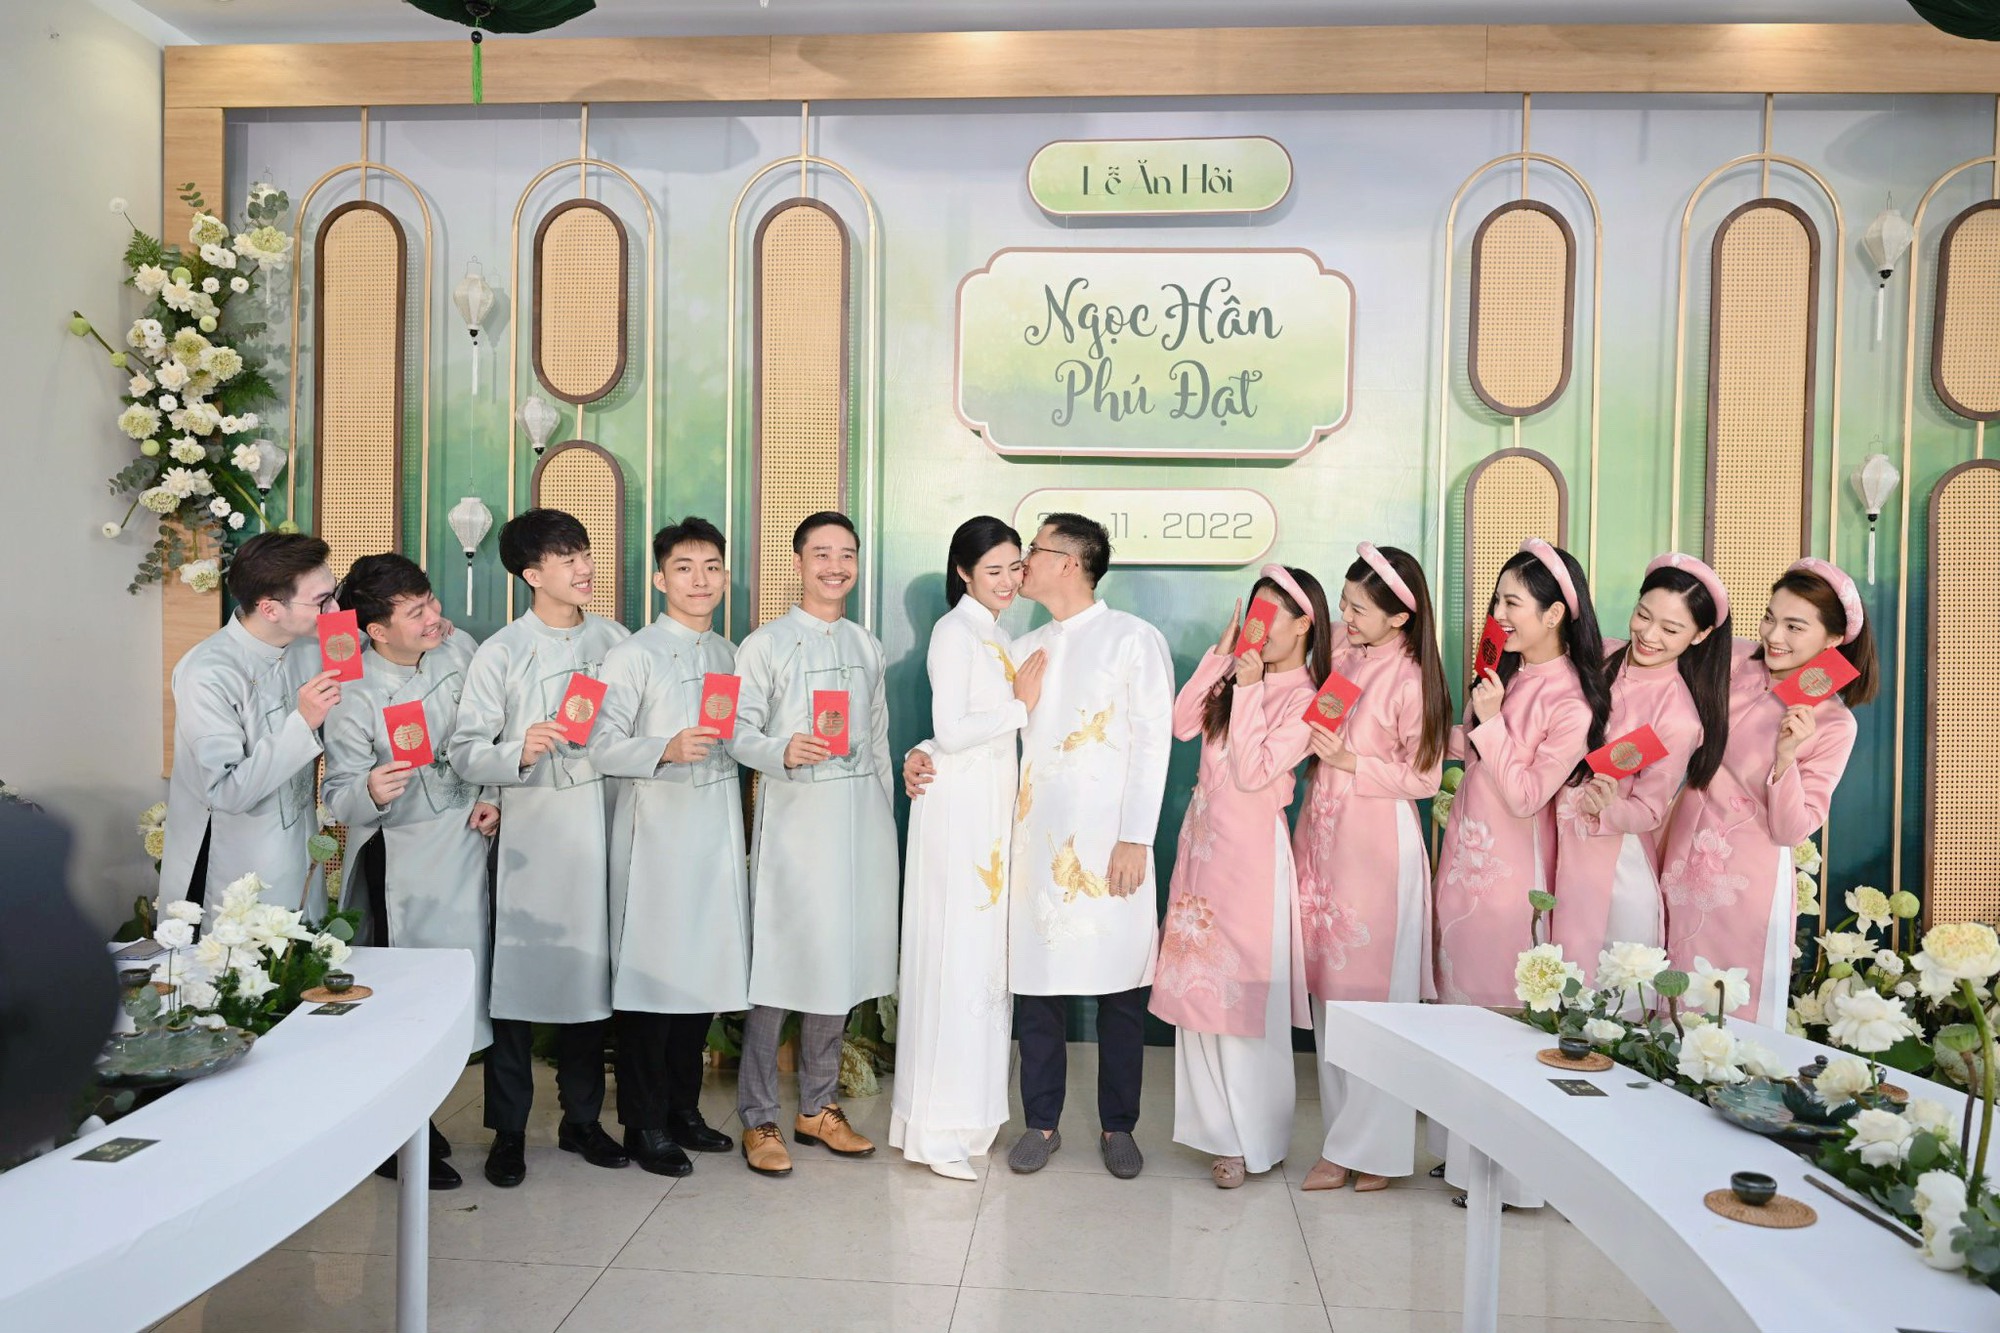 Hoa hậu Ngọc Hân diện áo dài nền nã, sánh đôi cùng chồng sắp cưới trong lễ ăn hỏi tại Hà Nội - Ảnh 4.